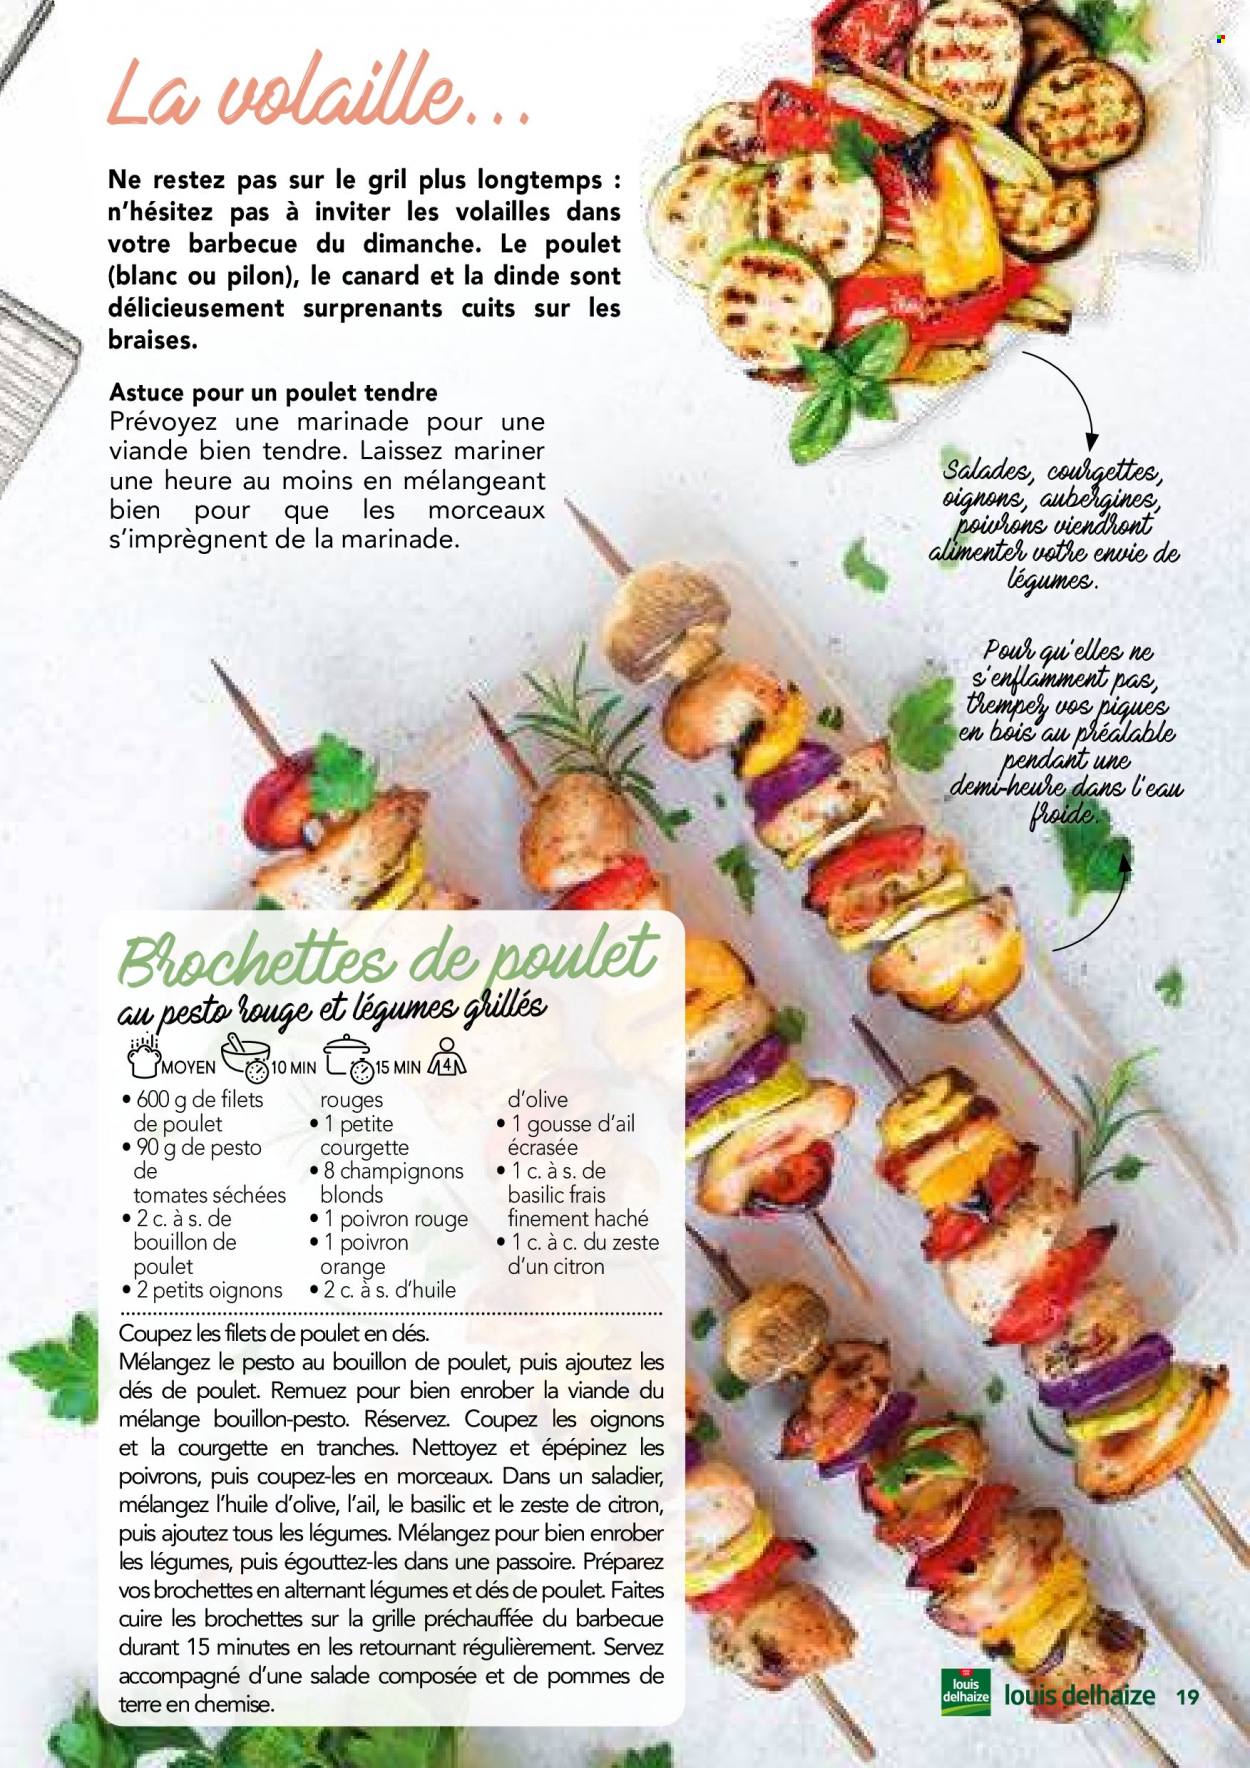 thumbnail - Catalogue Louis Delhaize - Produits soldés - salade, aubergine, courgette, oignons, champignon, filet de poulet, viande de poulet, viande de canard, yaourt, bouillon, tomates séchées. Page 19.